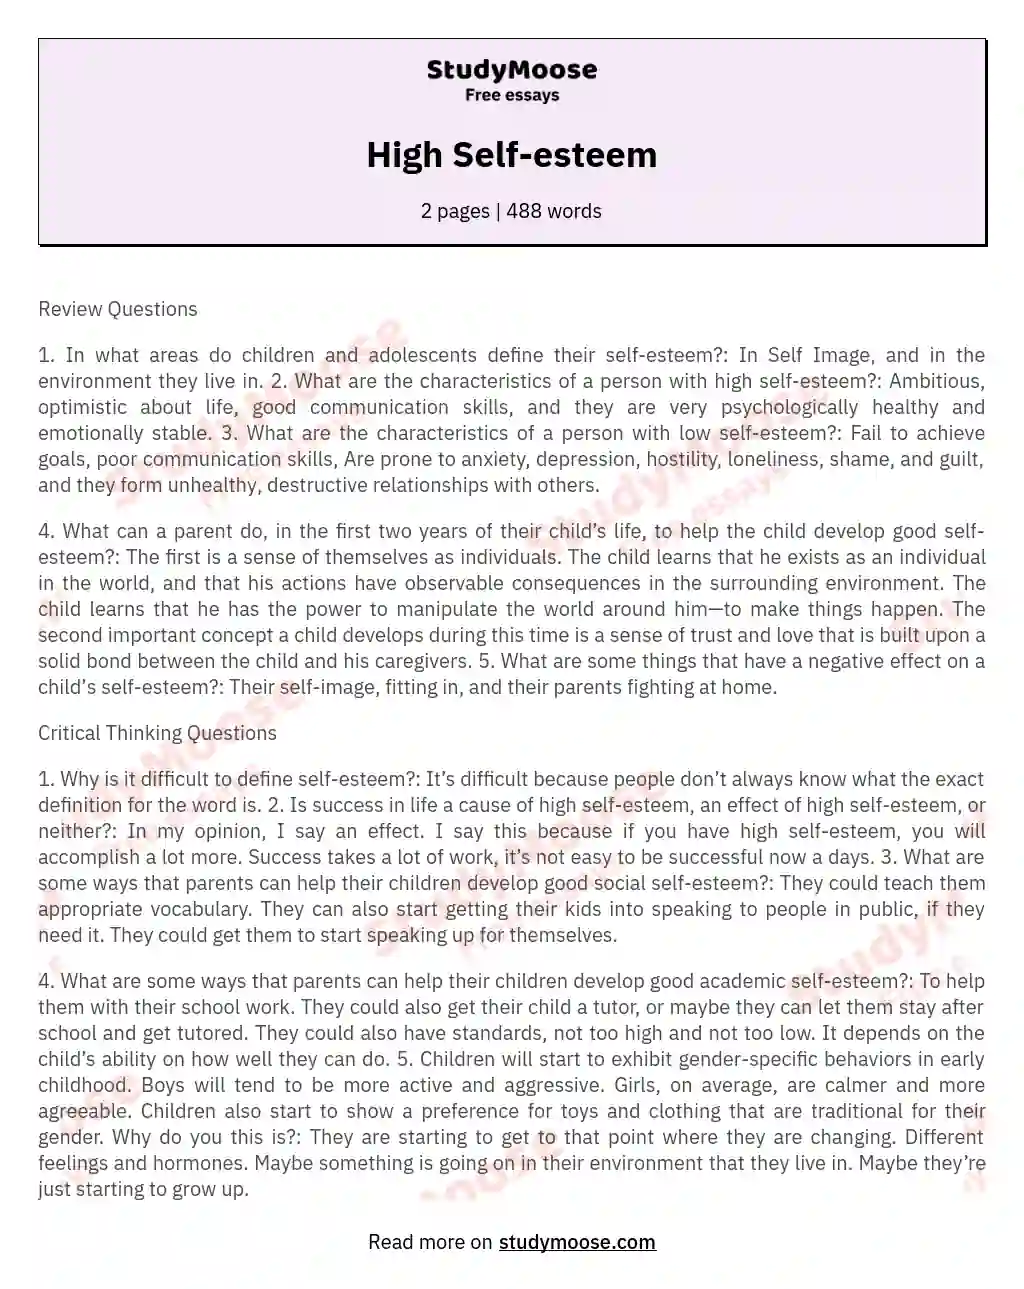 High Self-esteem